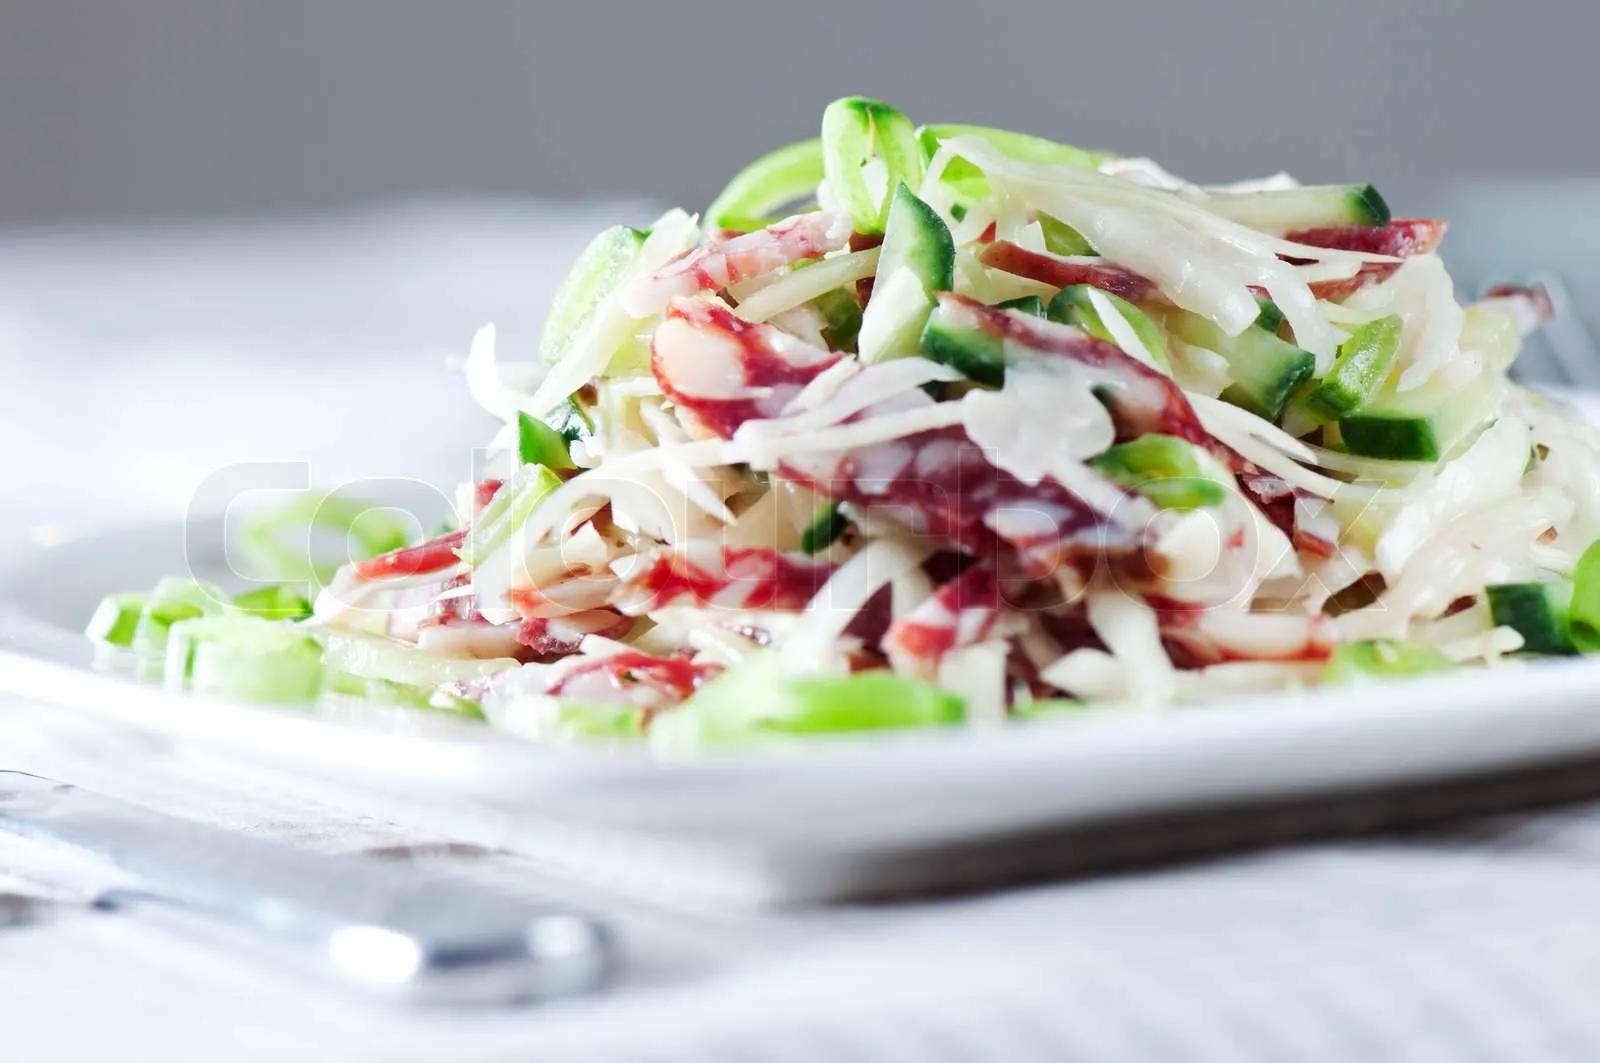 Salat mit Kraut , schließen Wurst, Gurken und Erbsen bis | Stock Bild ...